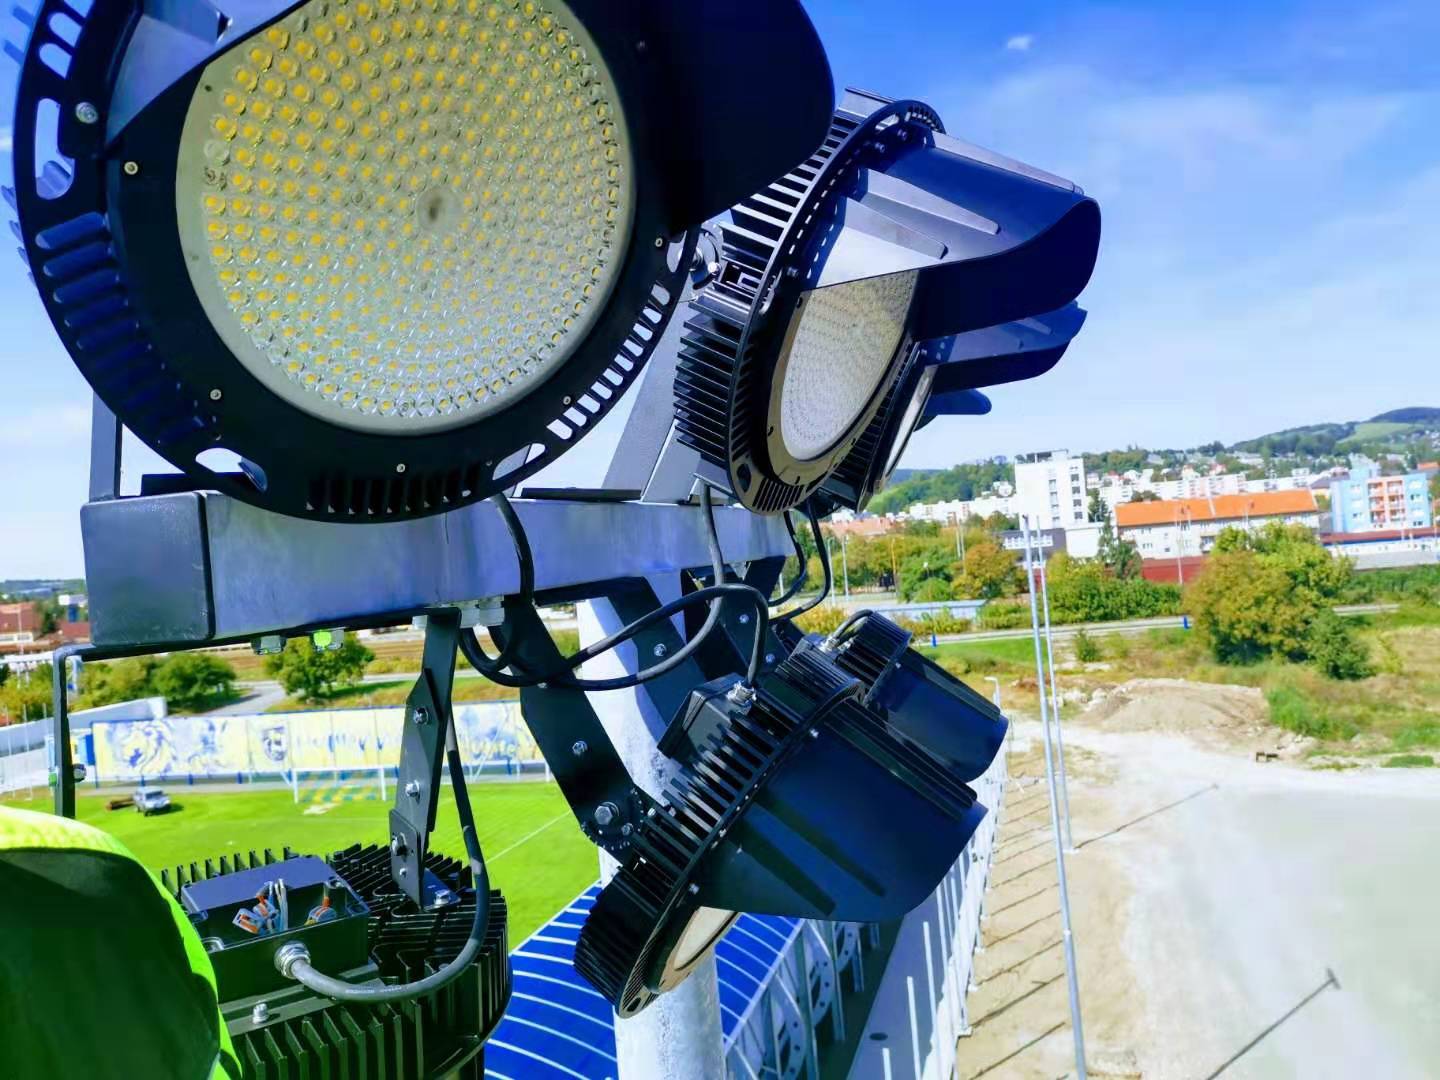 65pcs High Bay light in Slovakia Football Field